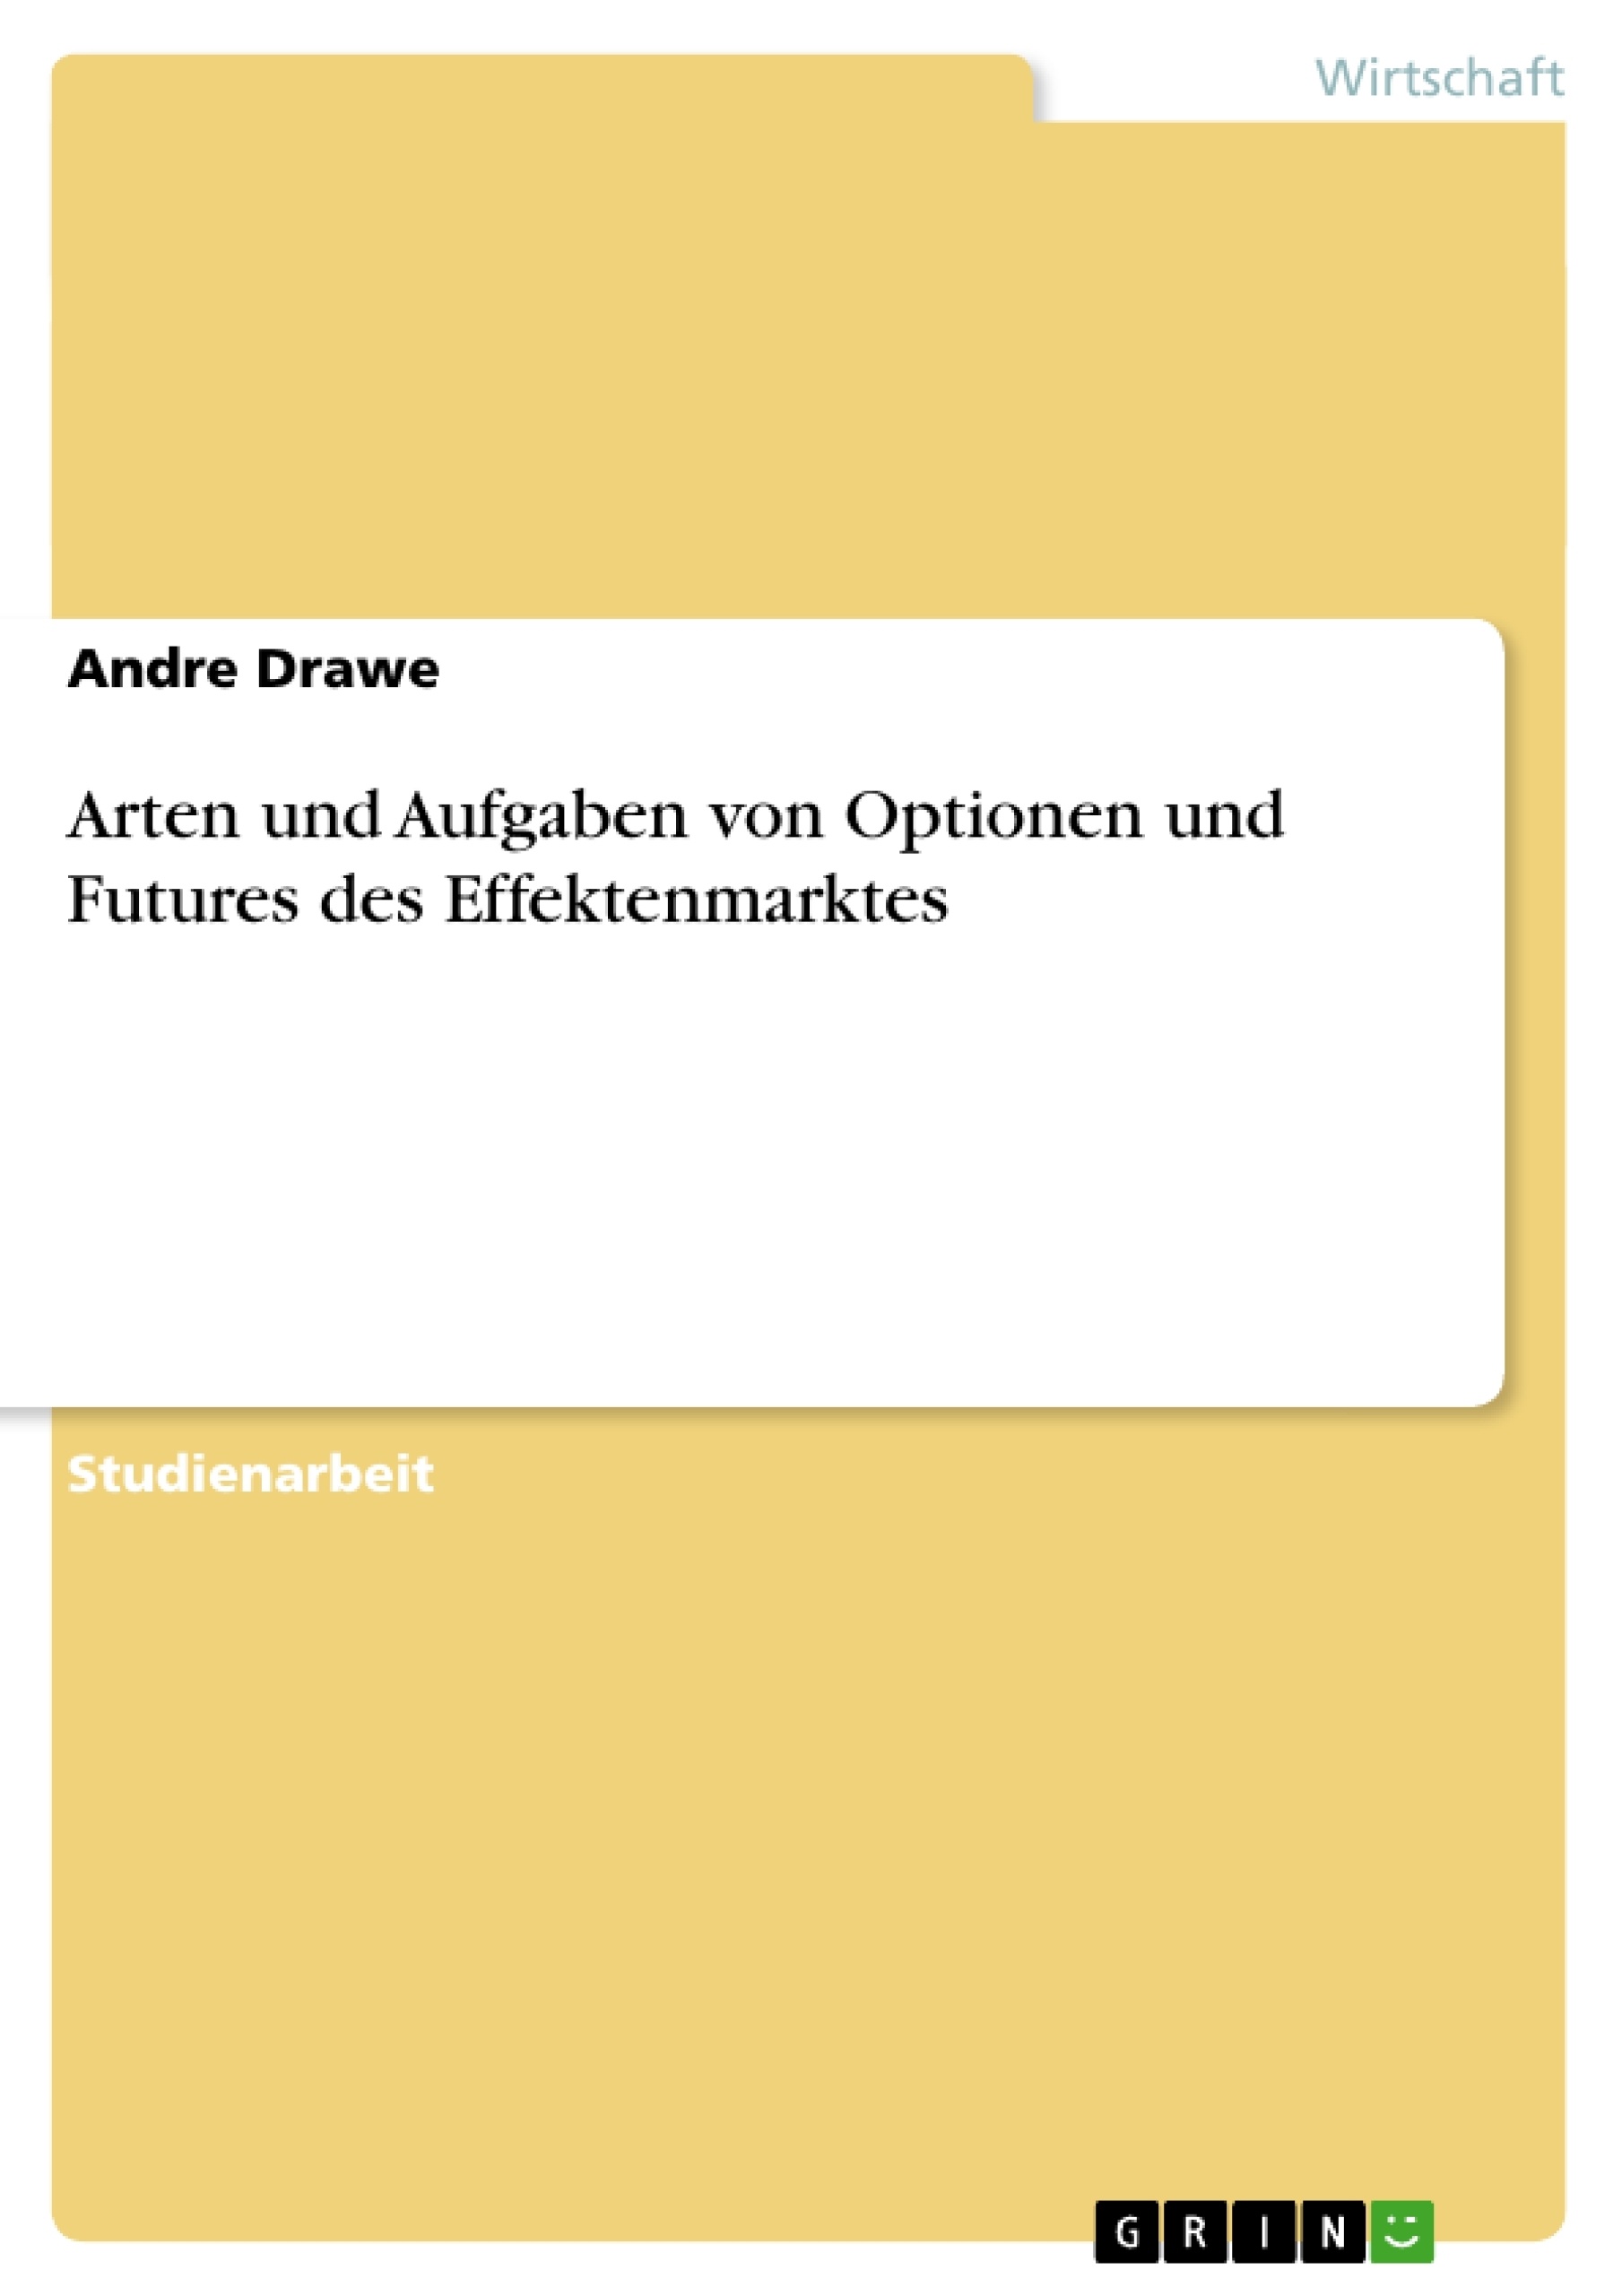 Titre: Arten und Aufgaben von Optionen und Futures des Effektenmarktes